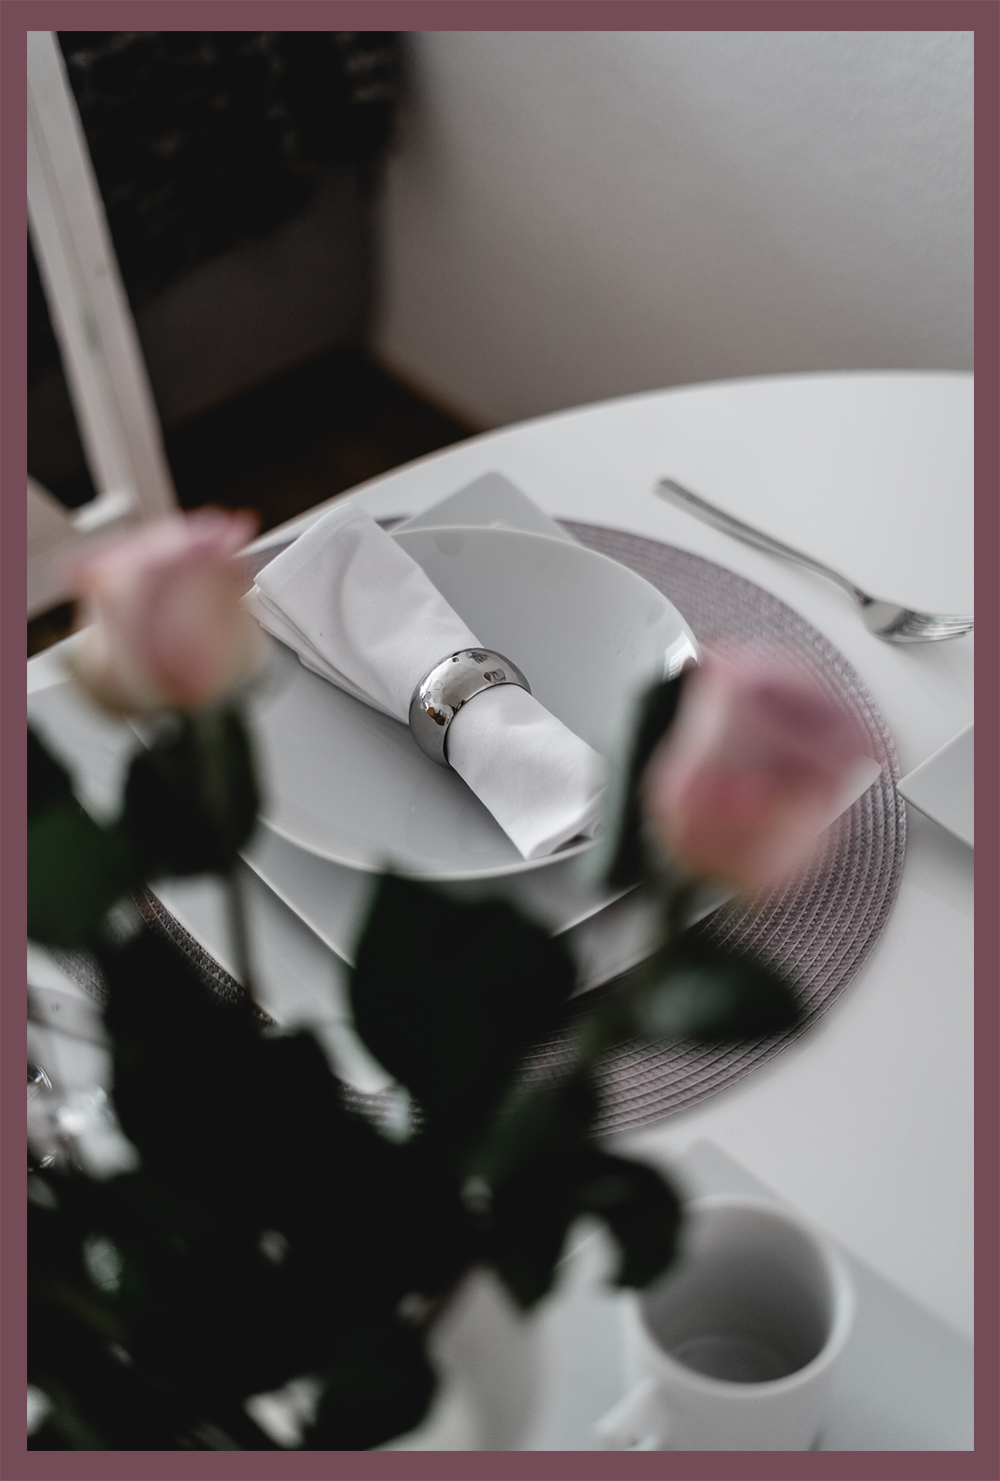 Ideen für schöne Tischdekoration-Tisch richtig eindecken-moderne Tischdeko-Lifestyleblog-andysparkles